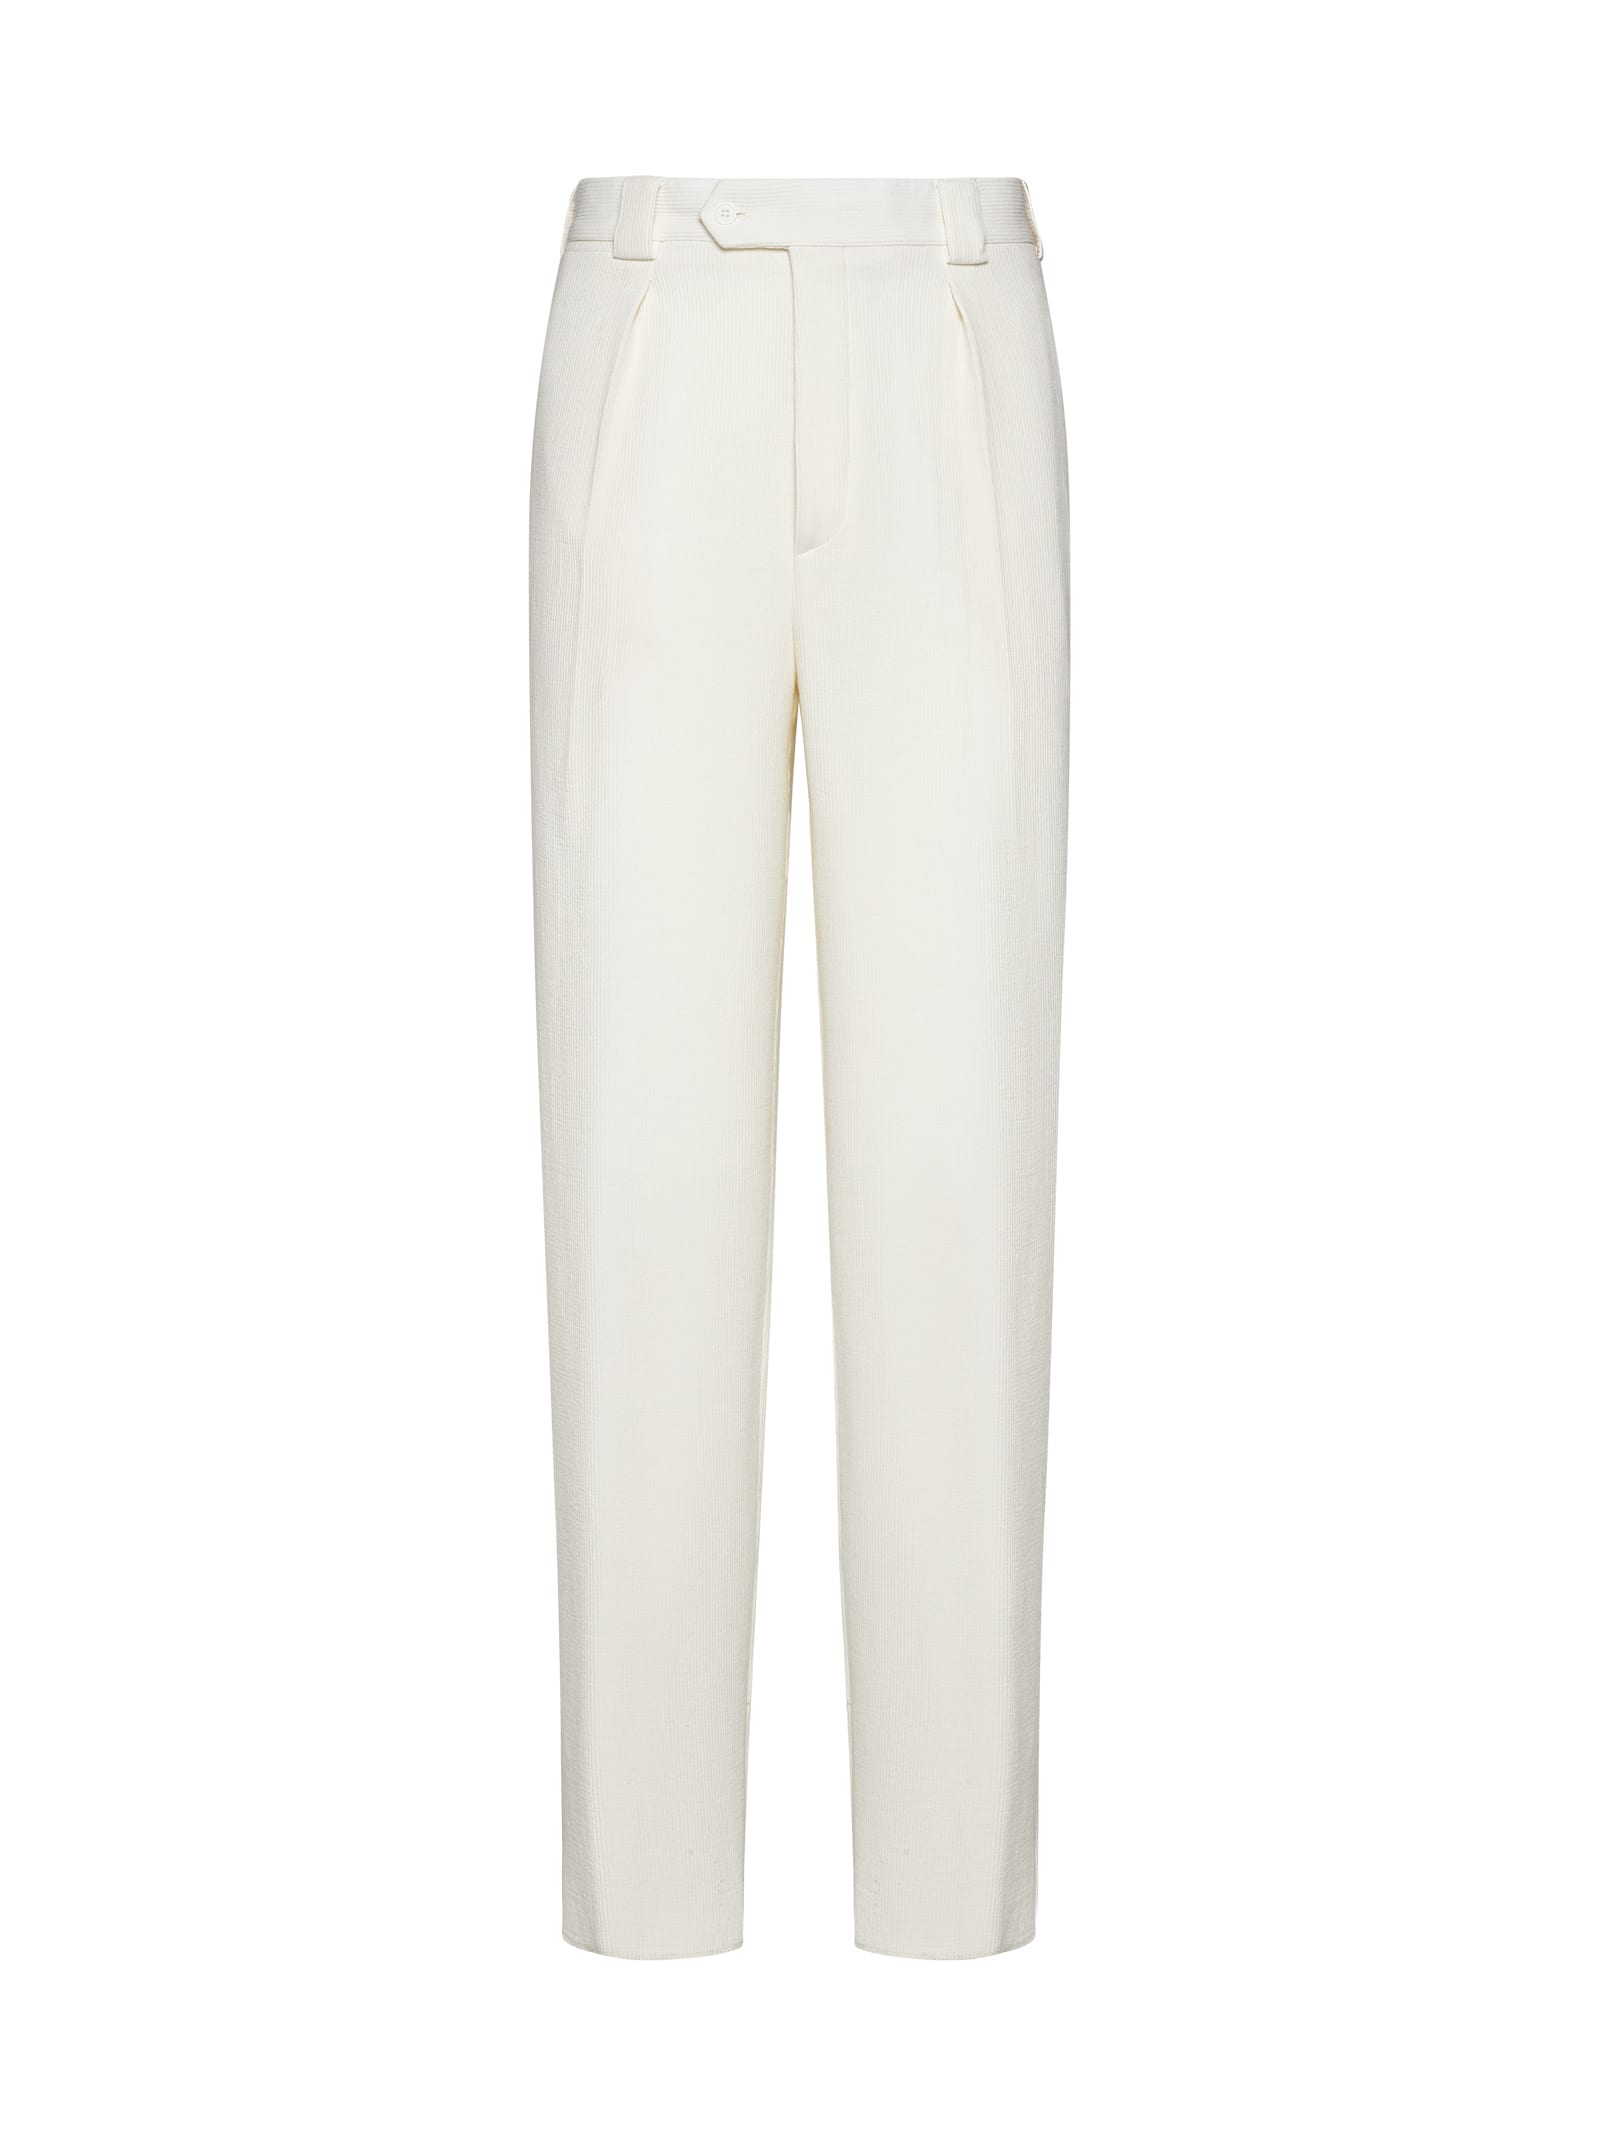 Shop Giorgio Armani Pants In Brilliant White